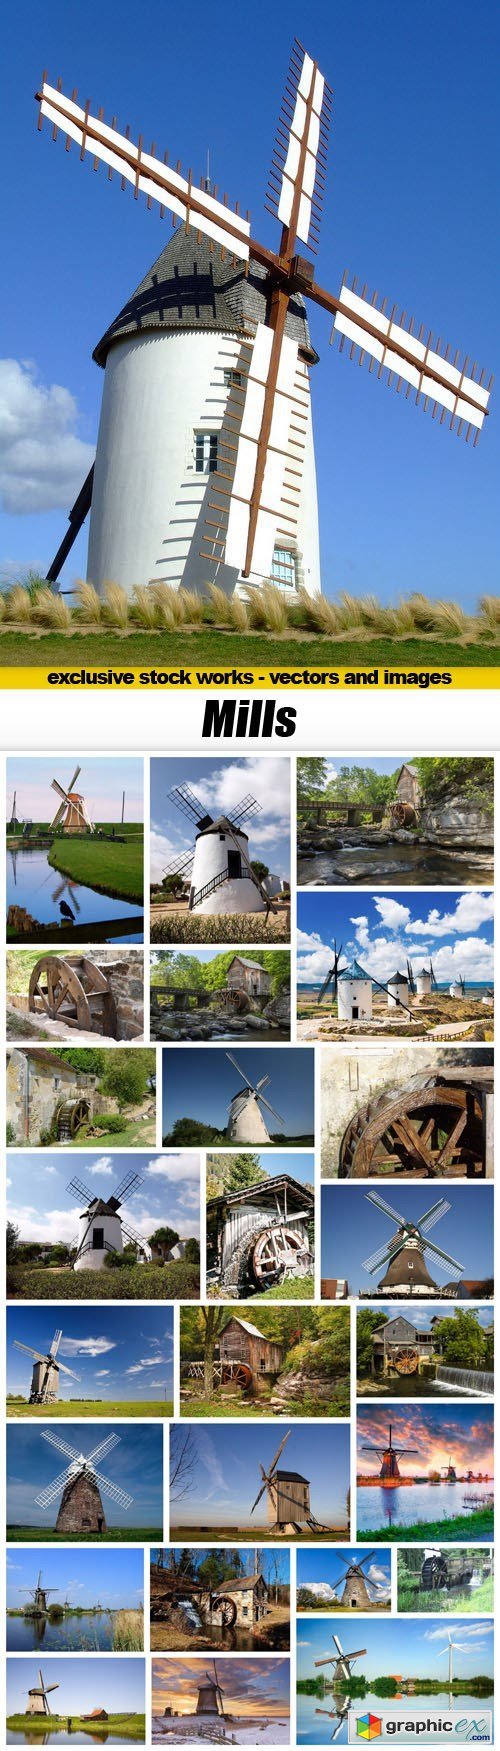 Mills - 26xUHQ JPEG